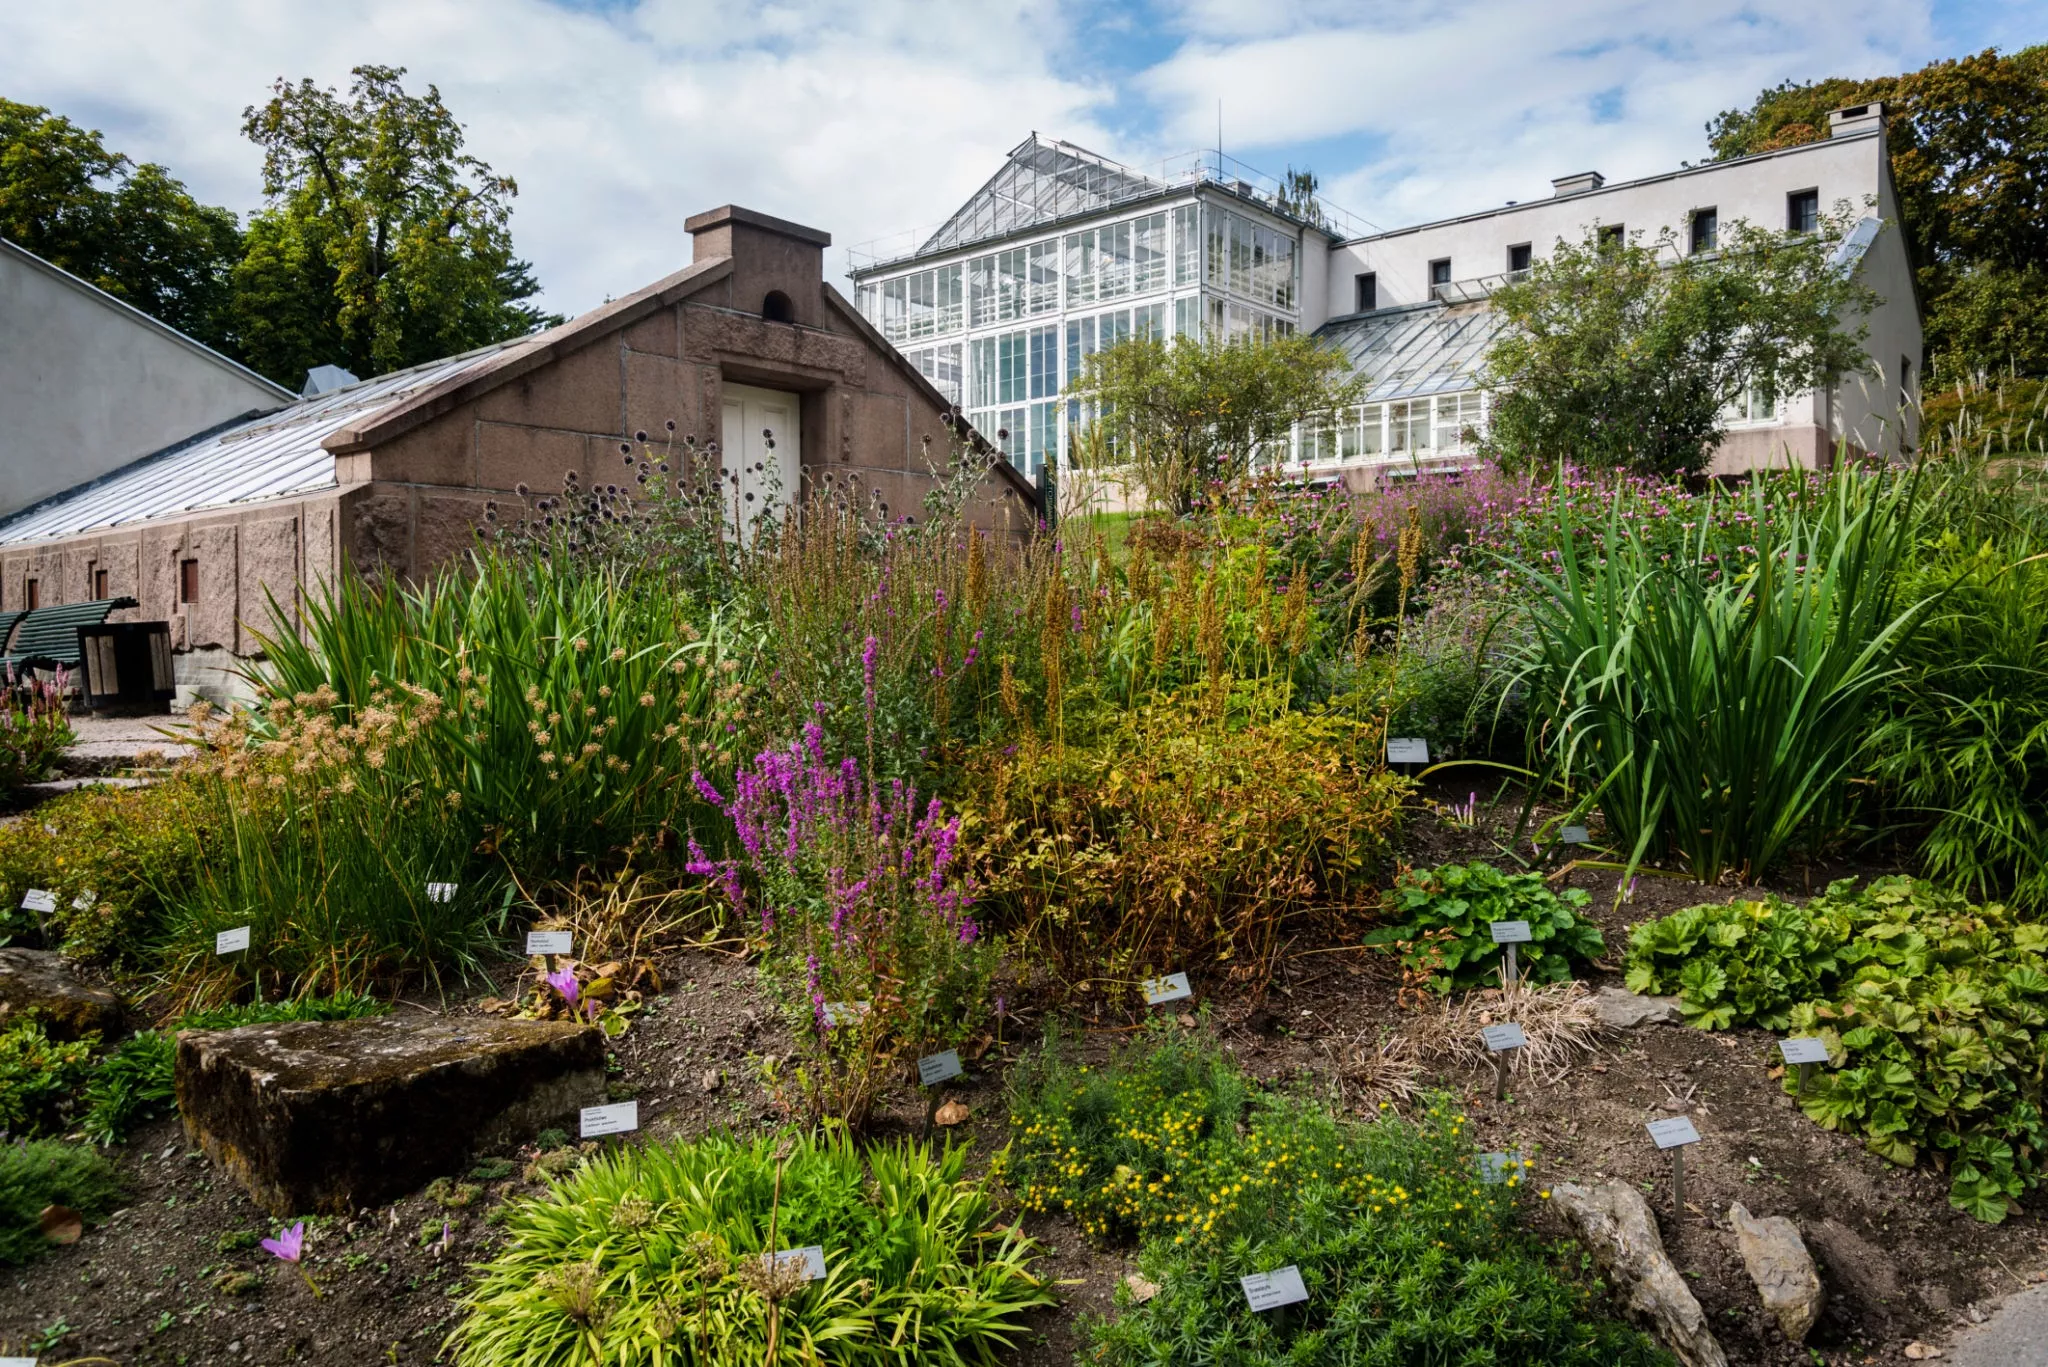 Botanical Garden in Norway, Europe | Botanical Gardens - Rated 4.1